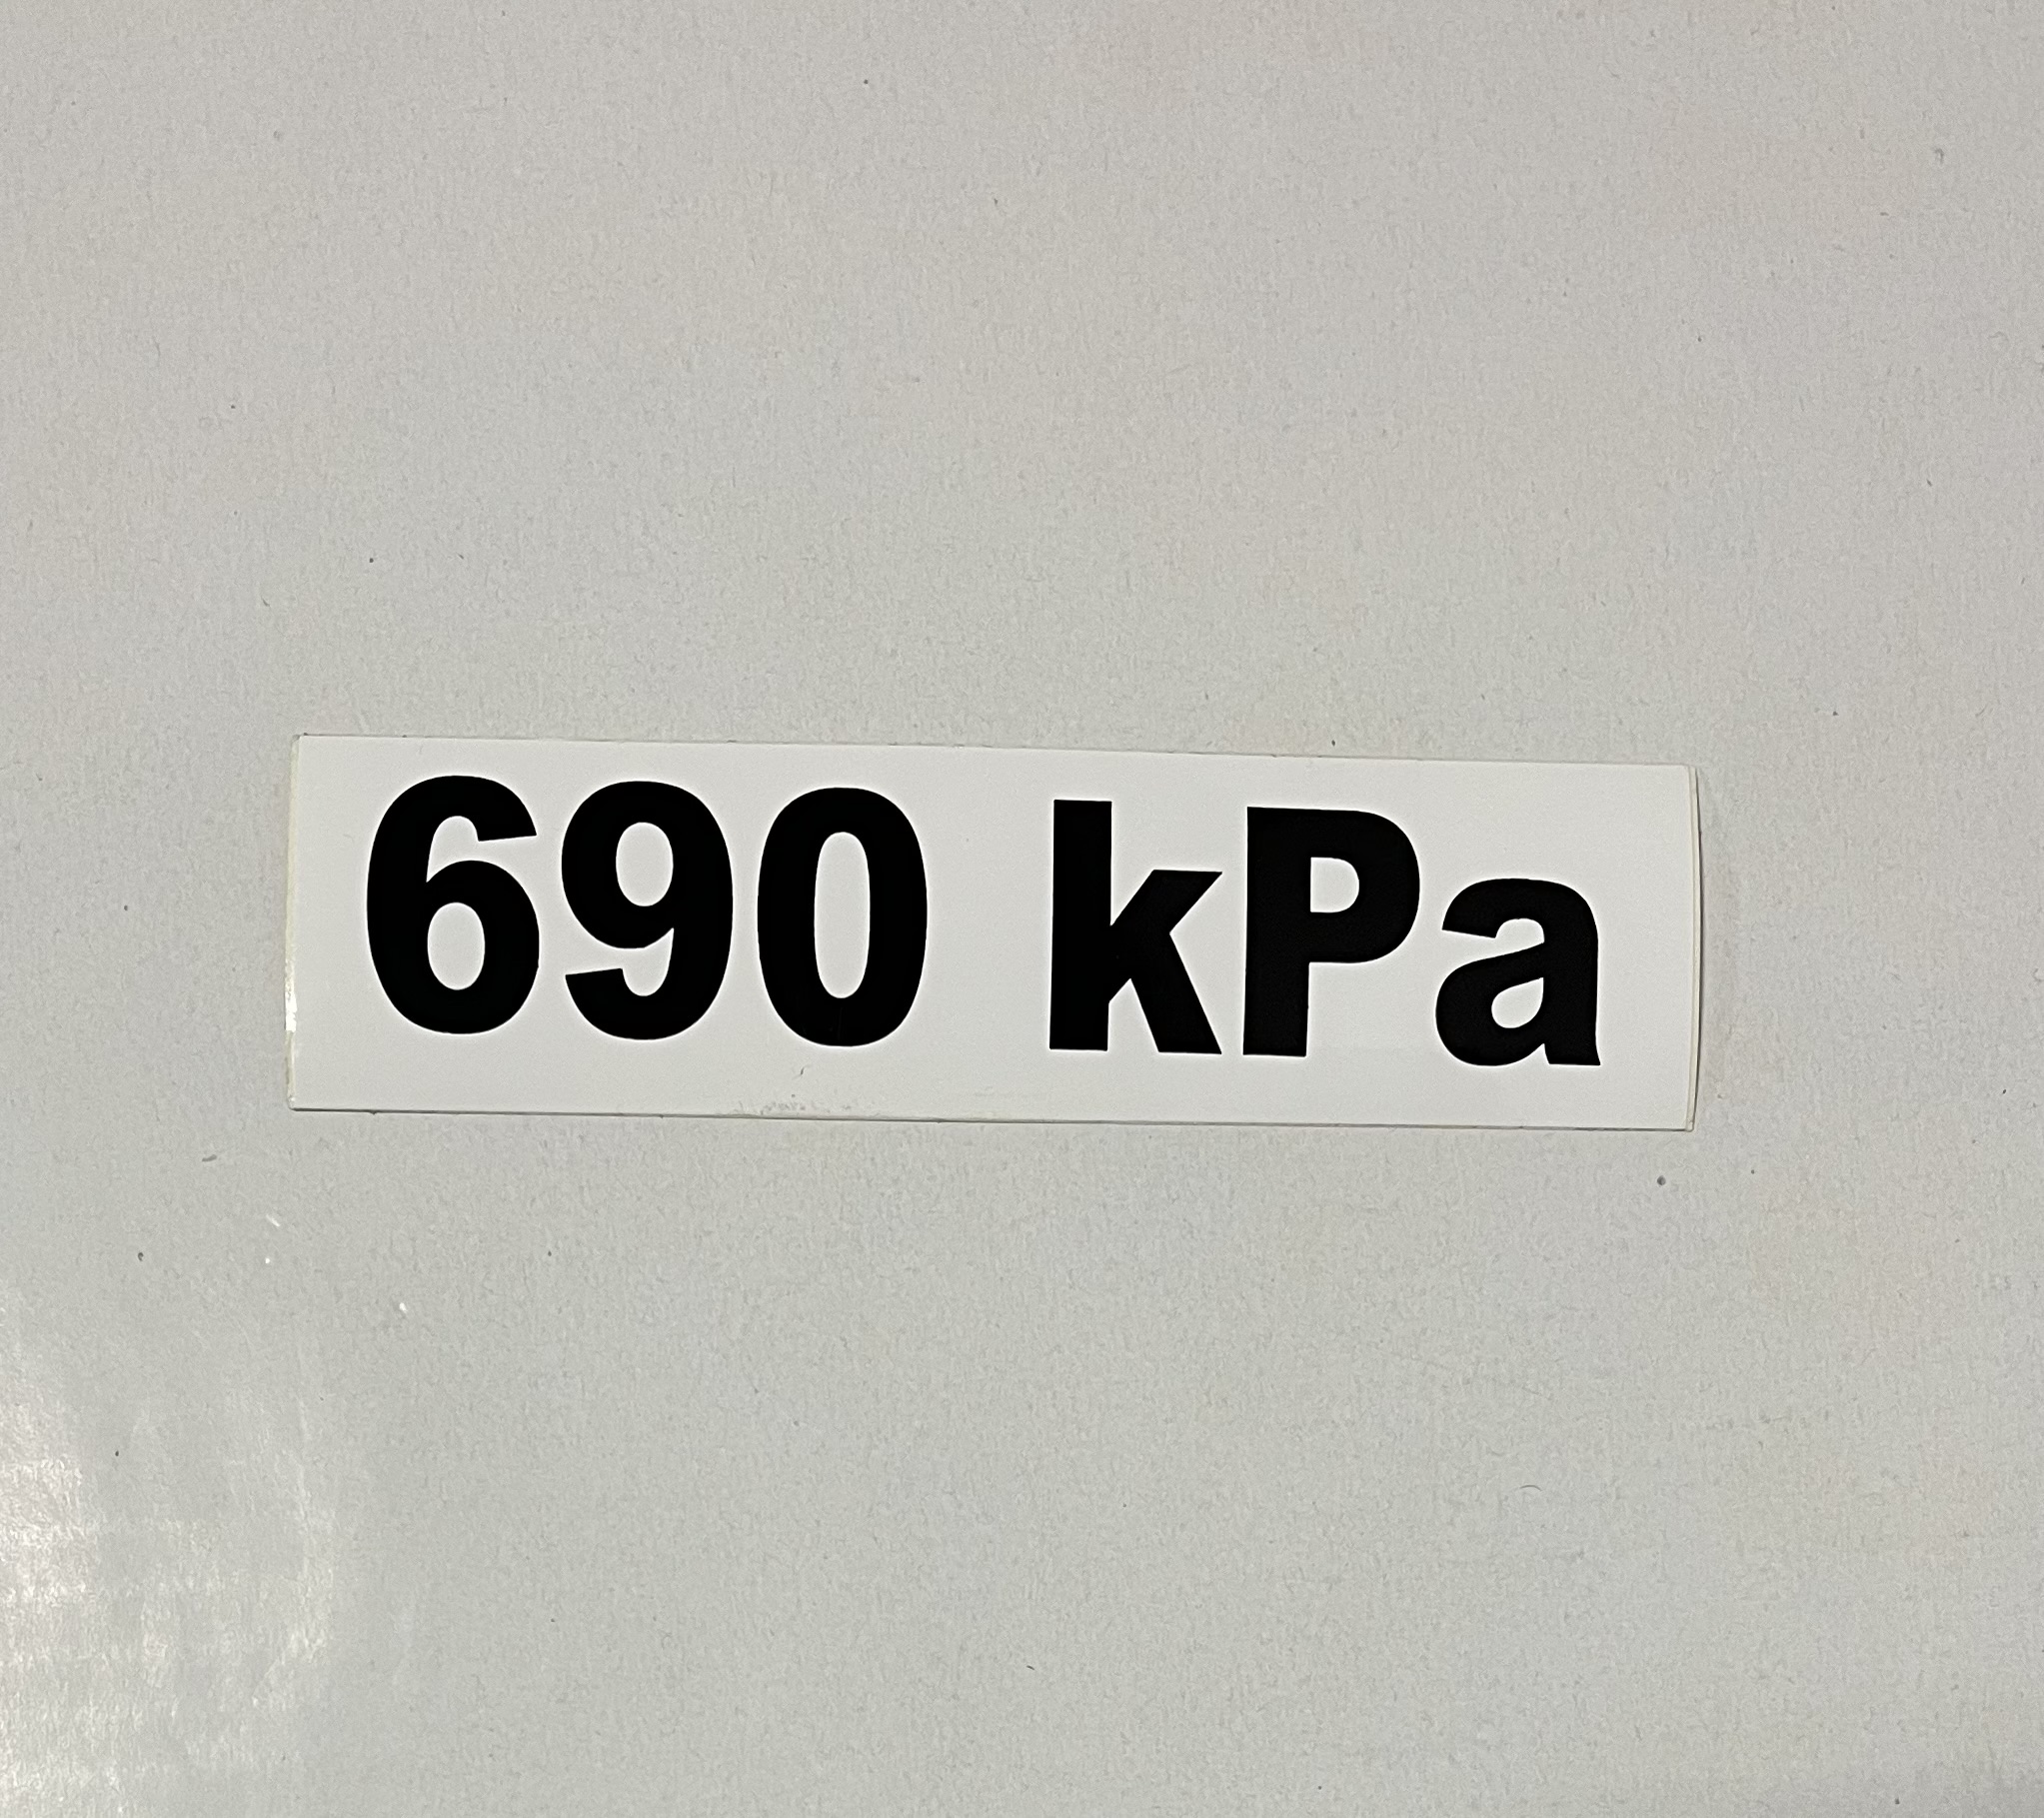 Označenie kPa 690